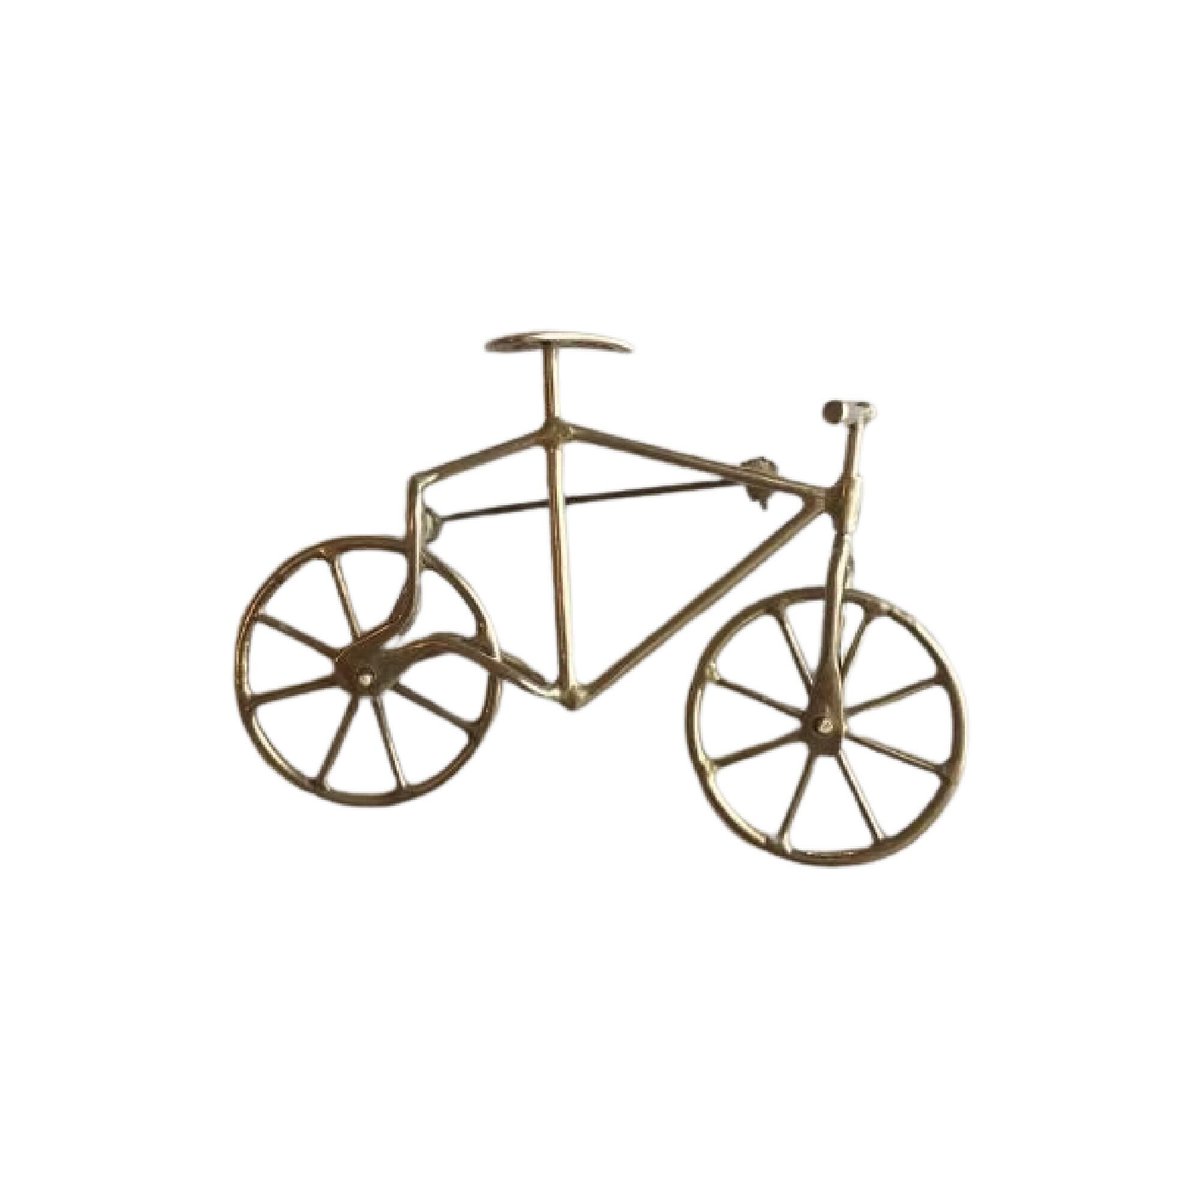 Sterling Silver Vintage Bicycle Brooch etsy.me/42dywtJ #silver #artdeco #artdecobrooch #sterlingbrooch #artdecojewelry #junkyardblonde #gotvintage #giftforher #sterlingsilver